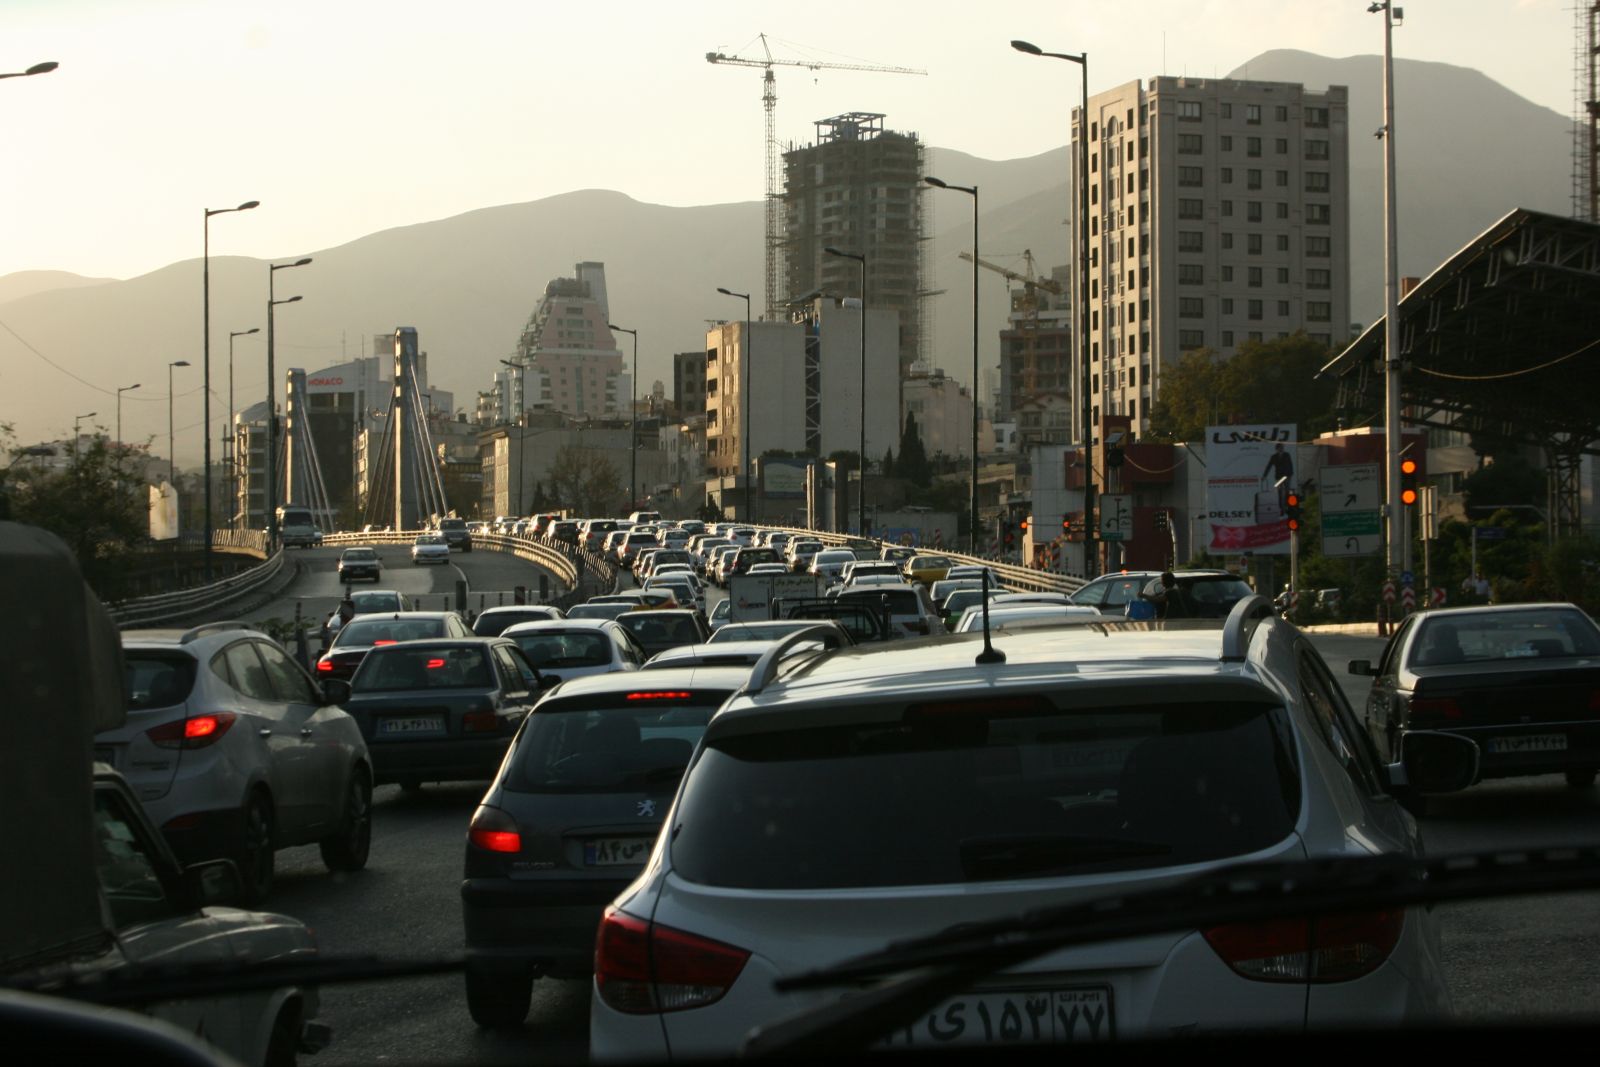 Teheránból Shirázba tartunk az autópályán, ám két és fél óra elteltével még mindig Teheránban vagyunk, folyamatos haladás mellett. Közel-kelet összes autója, de talán még Közép-Európa autóparkja is elénk költözött az útra. A közlekedési szokások láttán hamar egyértelművé válik: hamarabb fognak feltrancsírozni az úttesten, mint fejbe lőni minket.